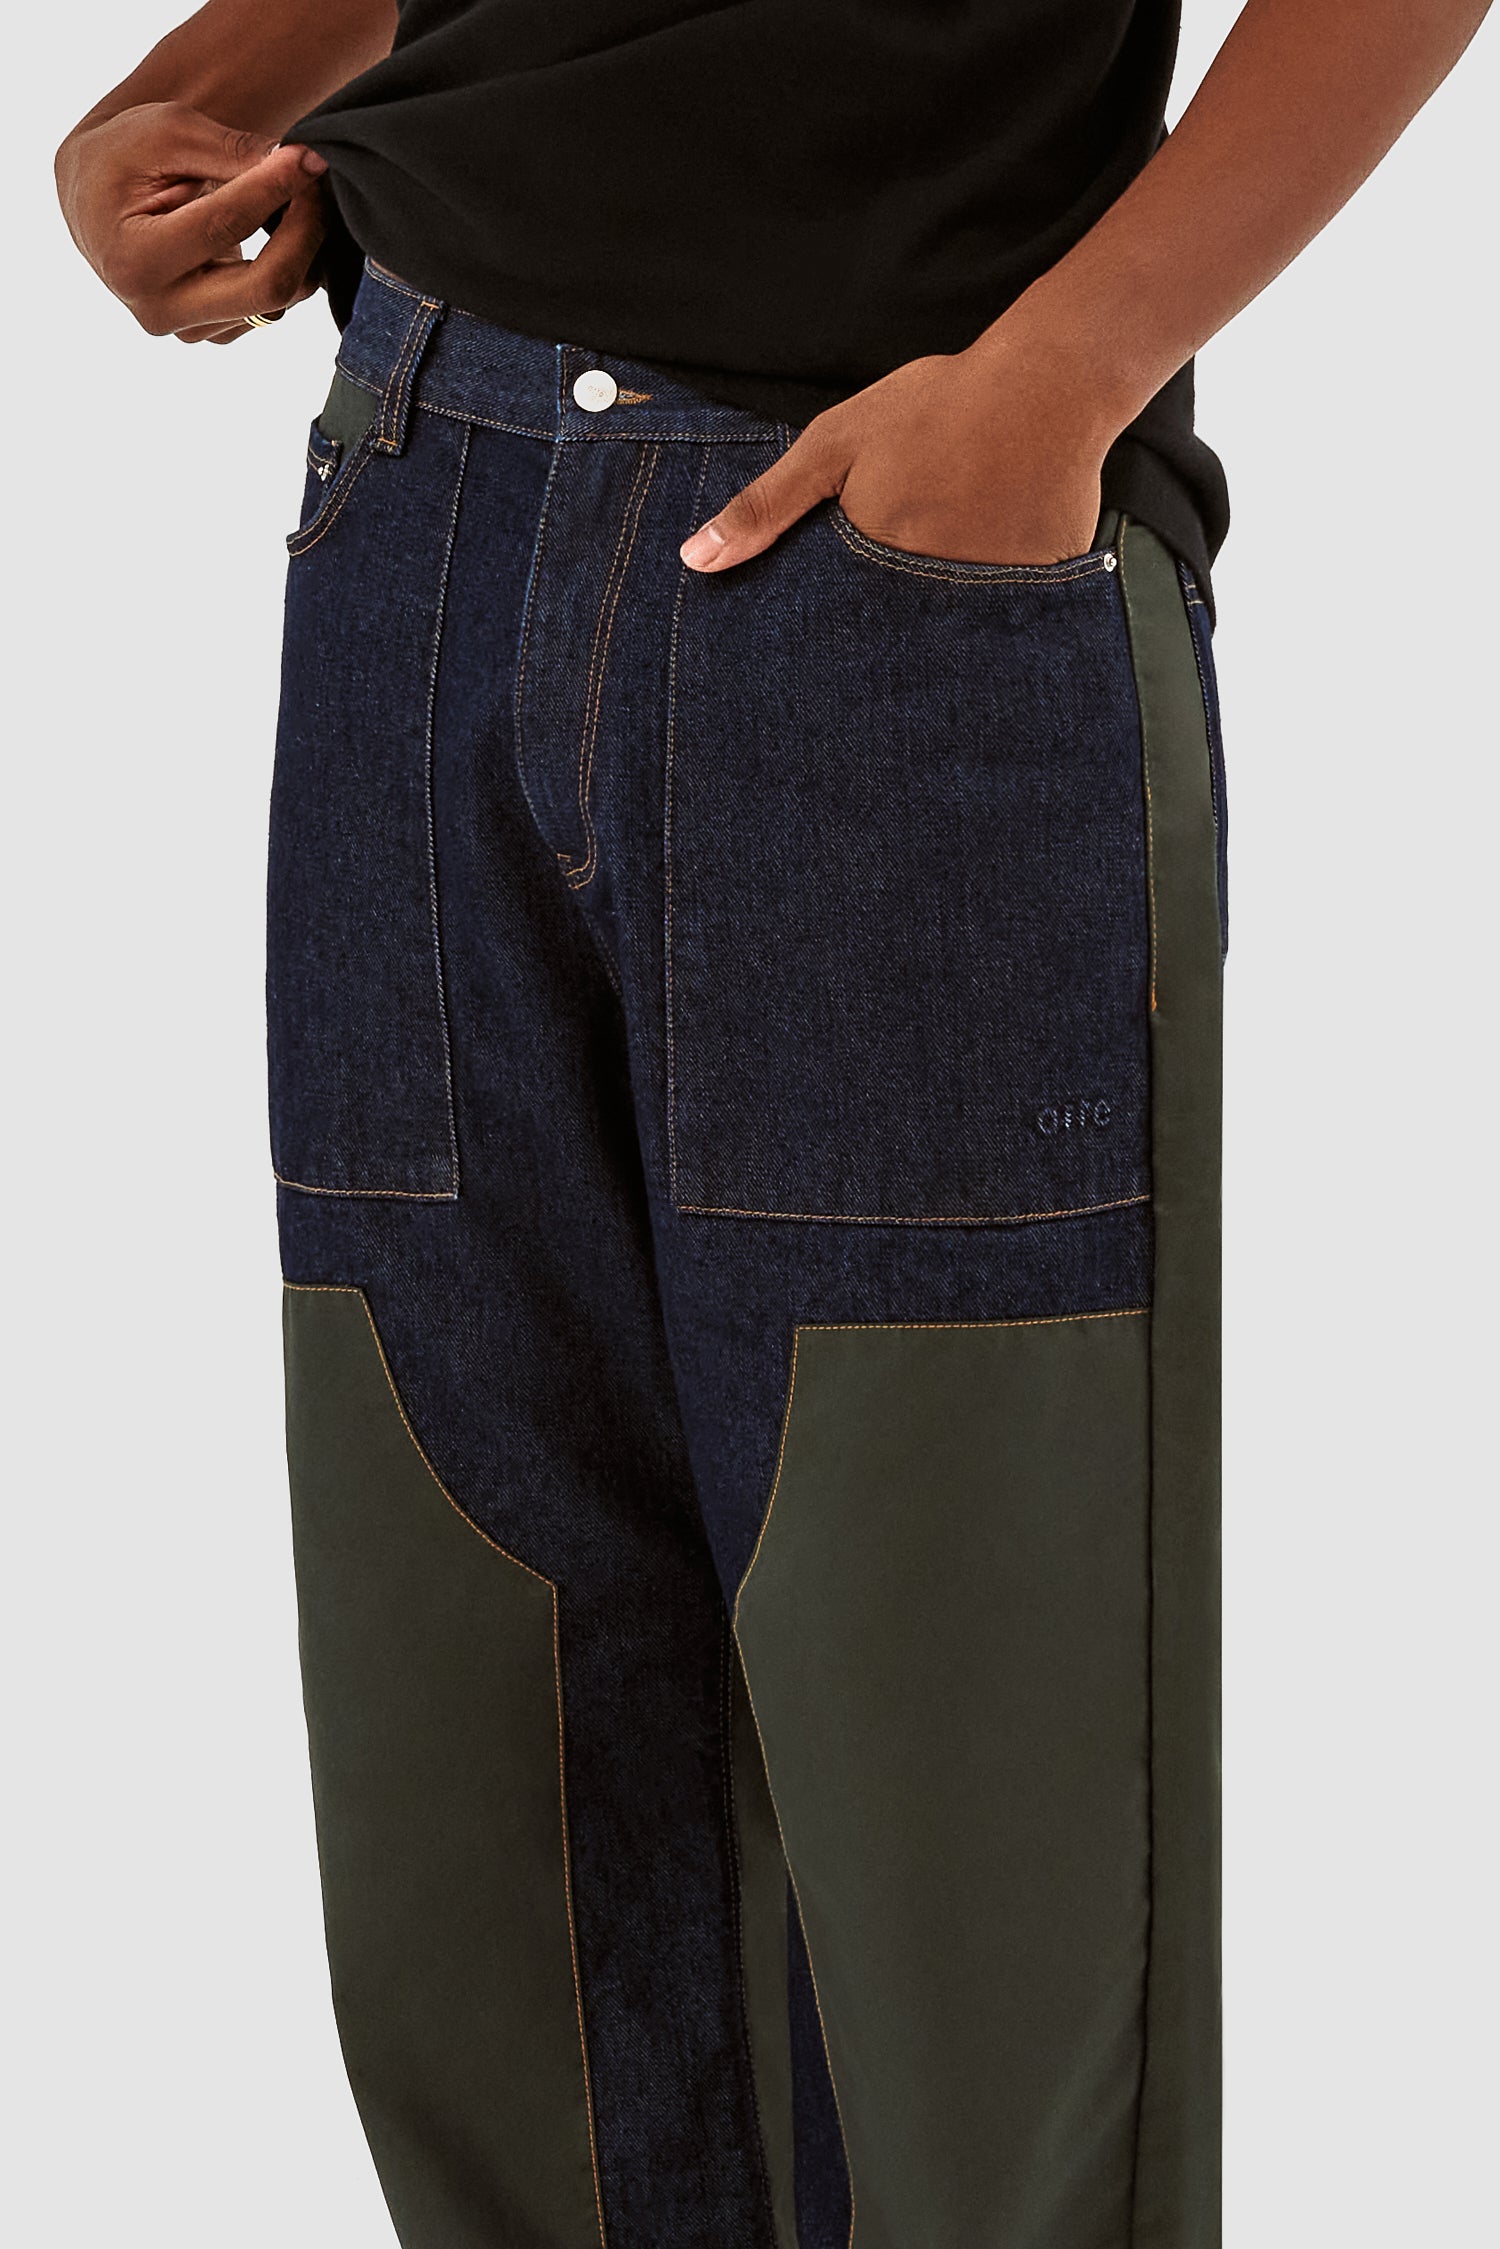 Jones Multi Pants - Denim/Green